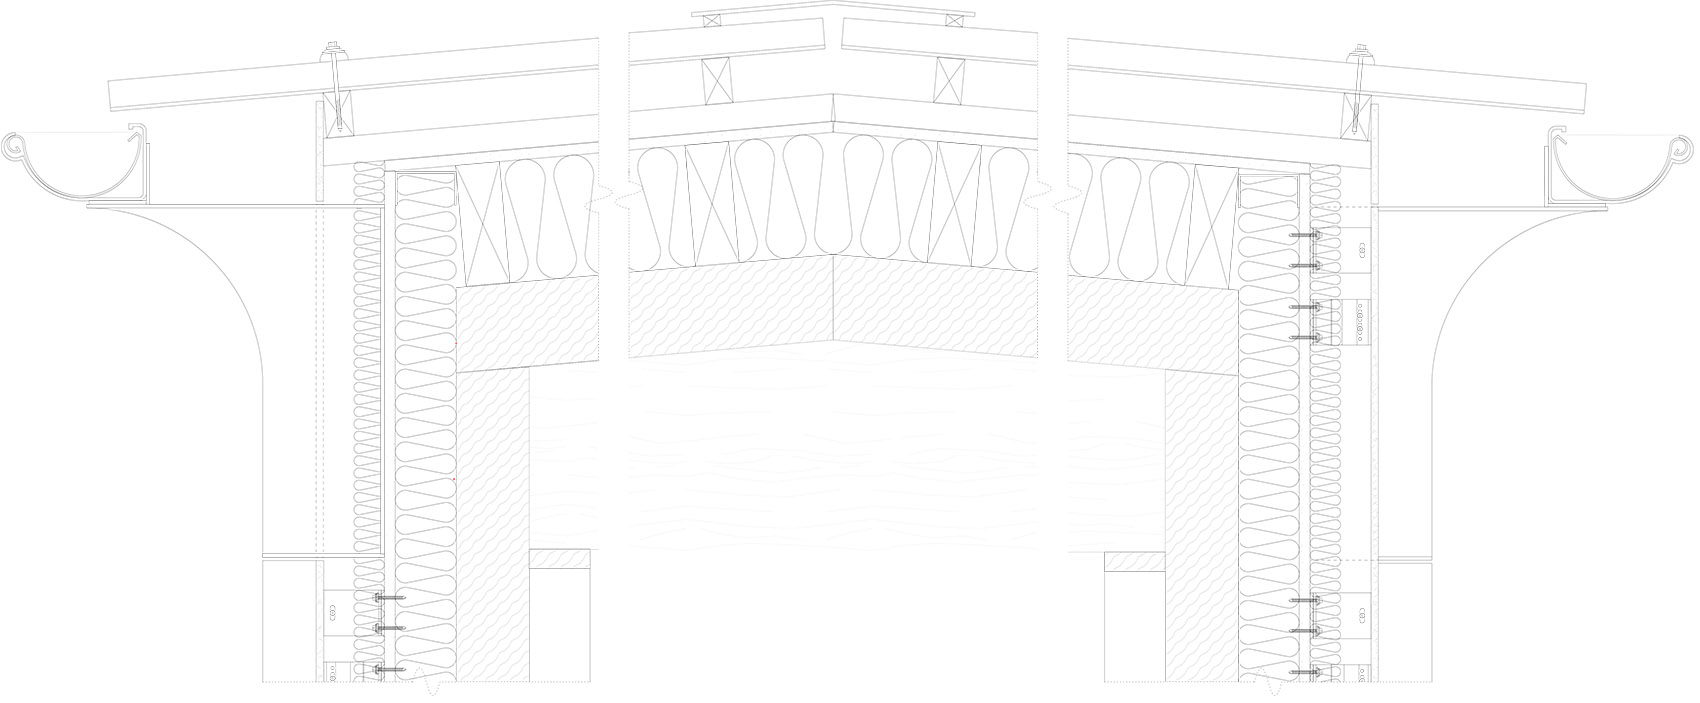 David Brownlow剧场，英国/校园生活的舞台-158